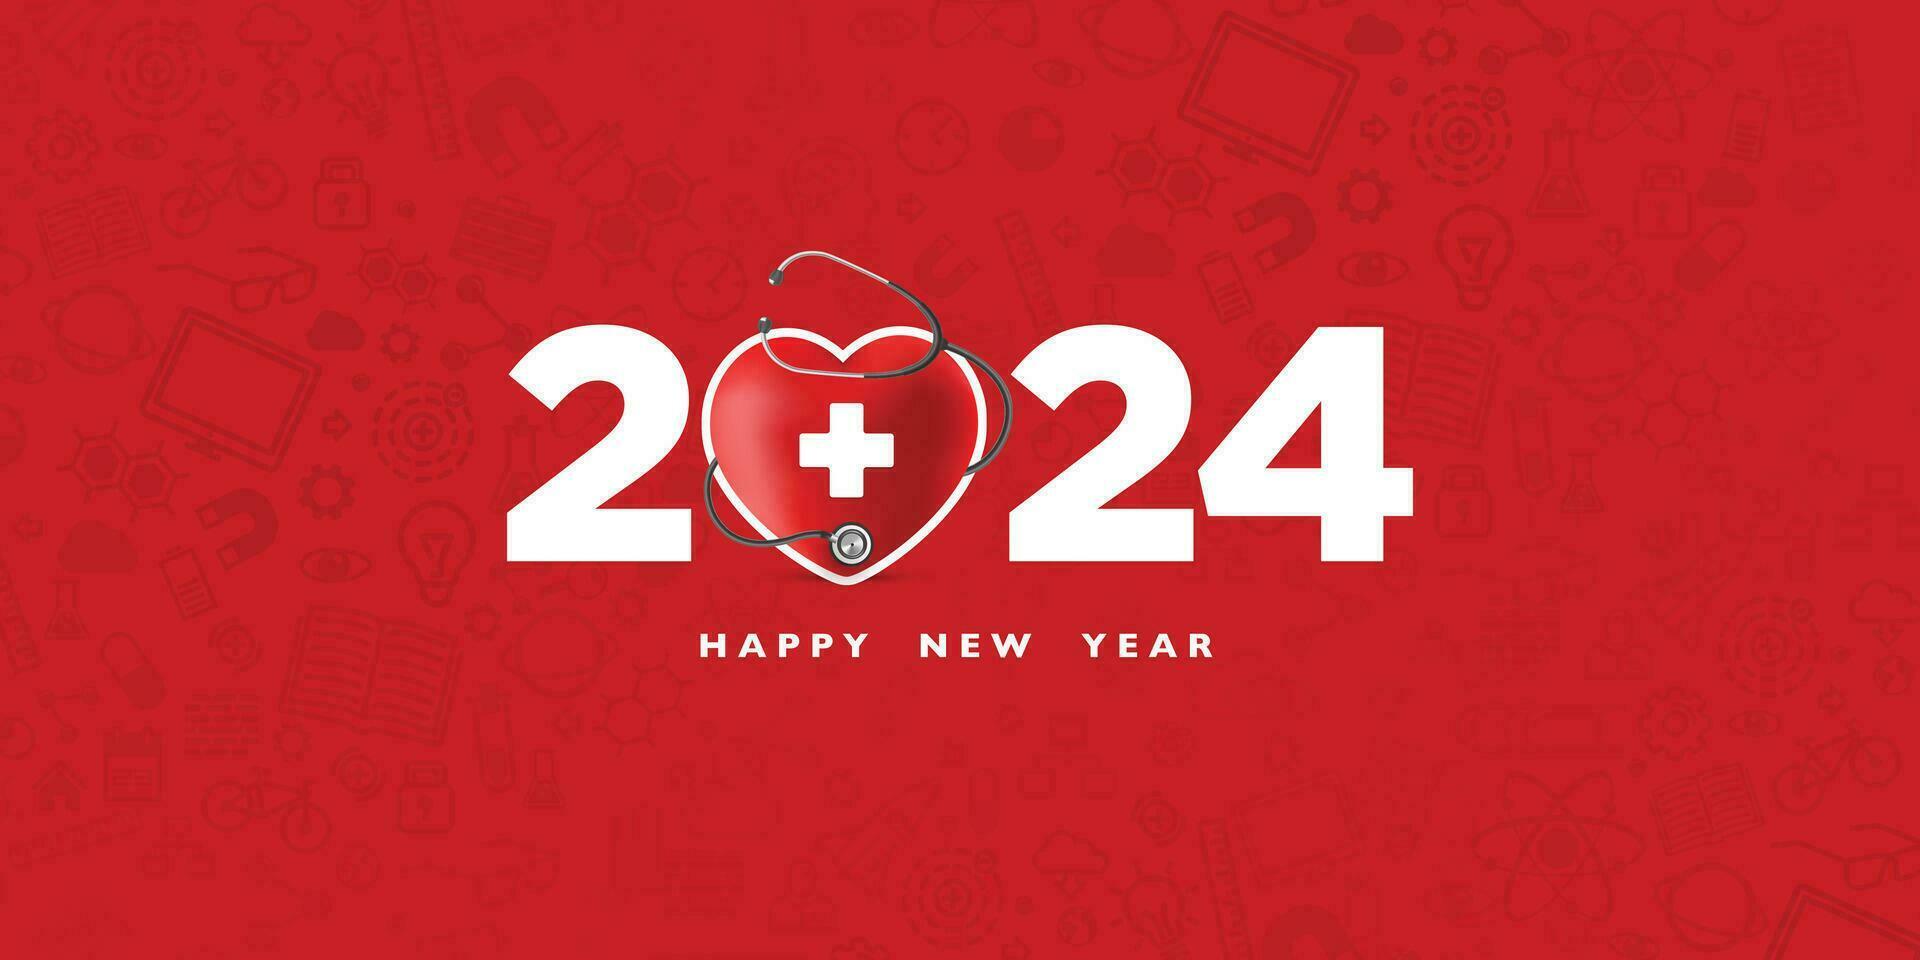 röd Heard en medicinsk tecken med stetoskop 2024 på en röd bakgrund, Lycklig ny år för hälsa vård, försäkring, wellness och medicinsk begrepp. vektor